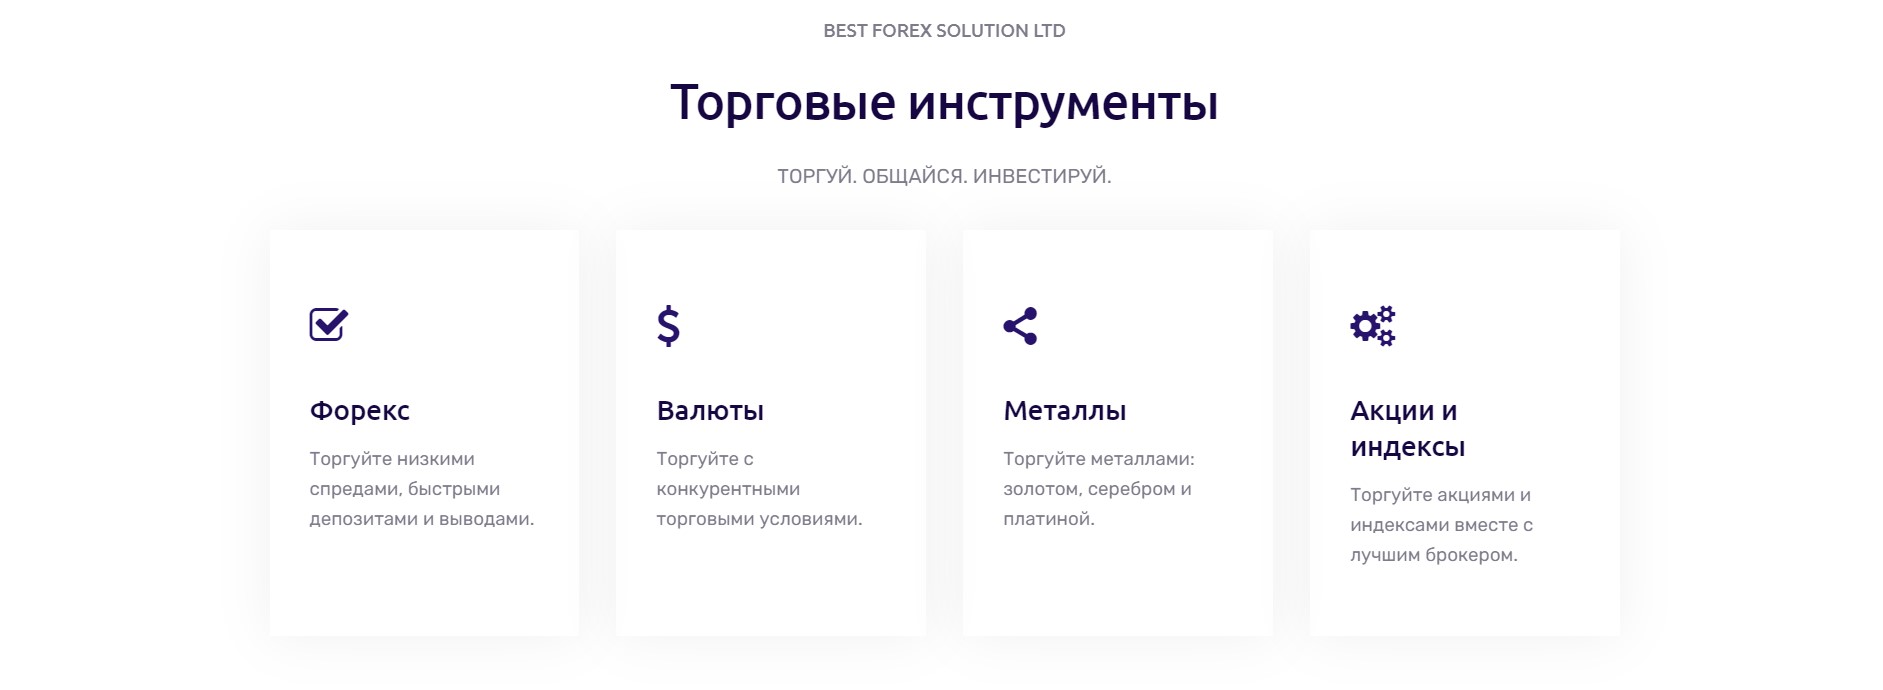 Best Forex Solution Ltd